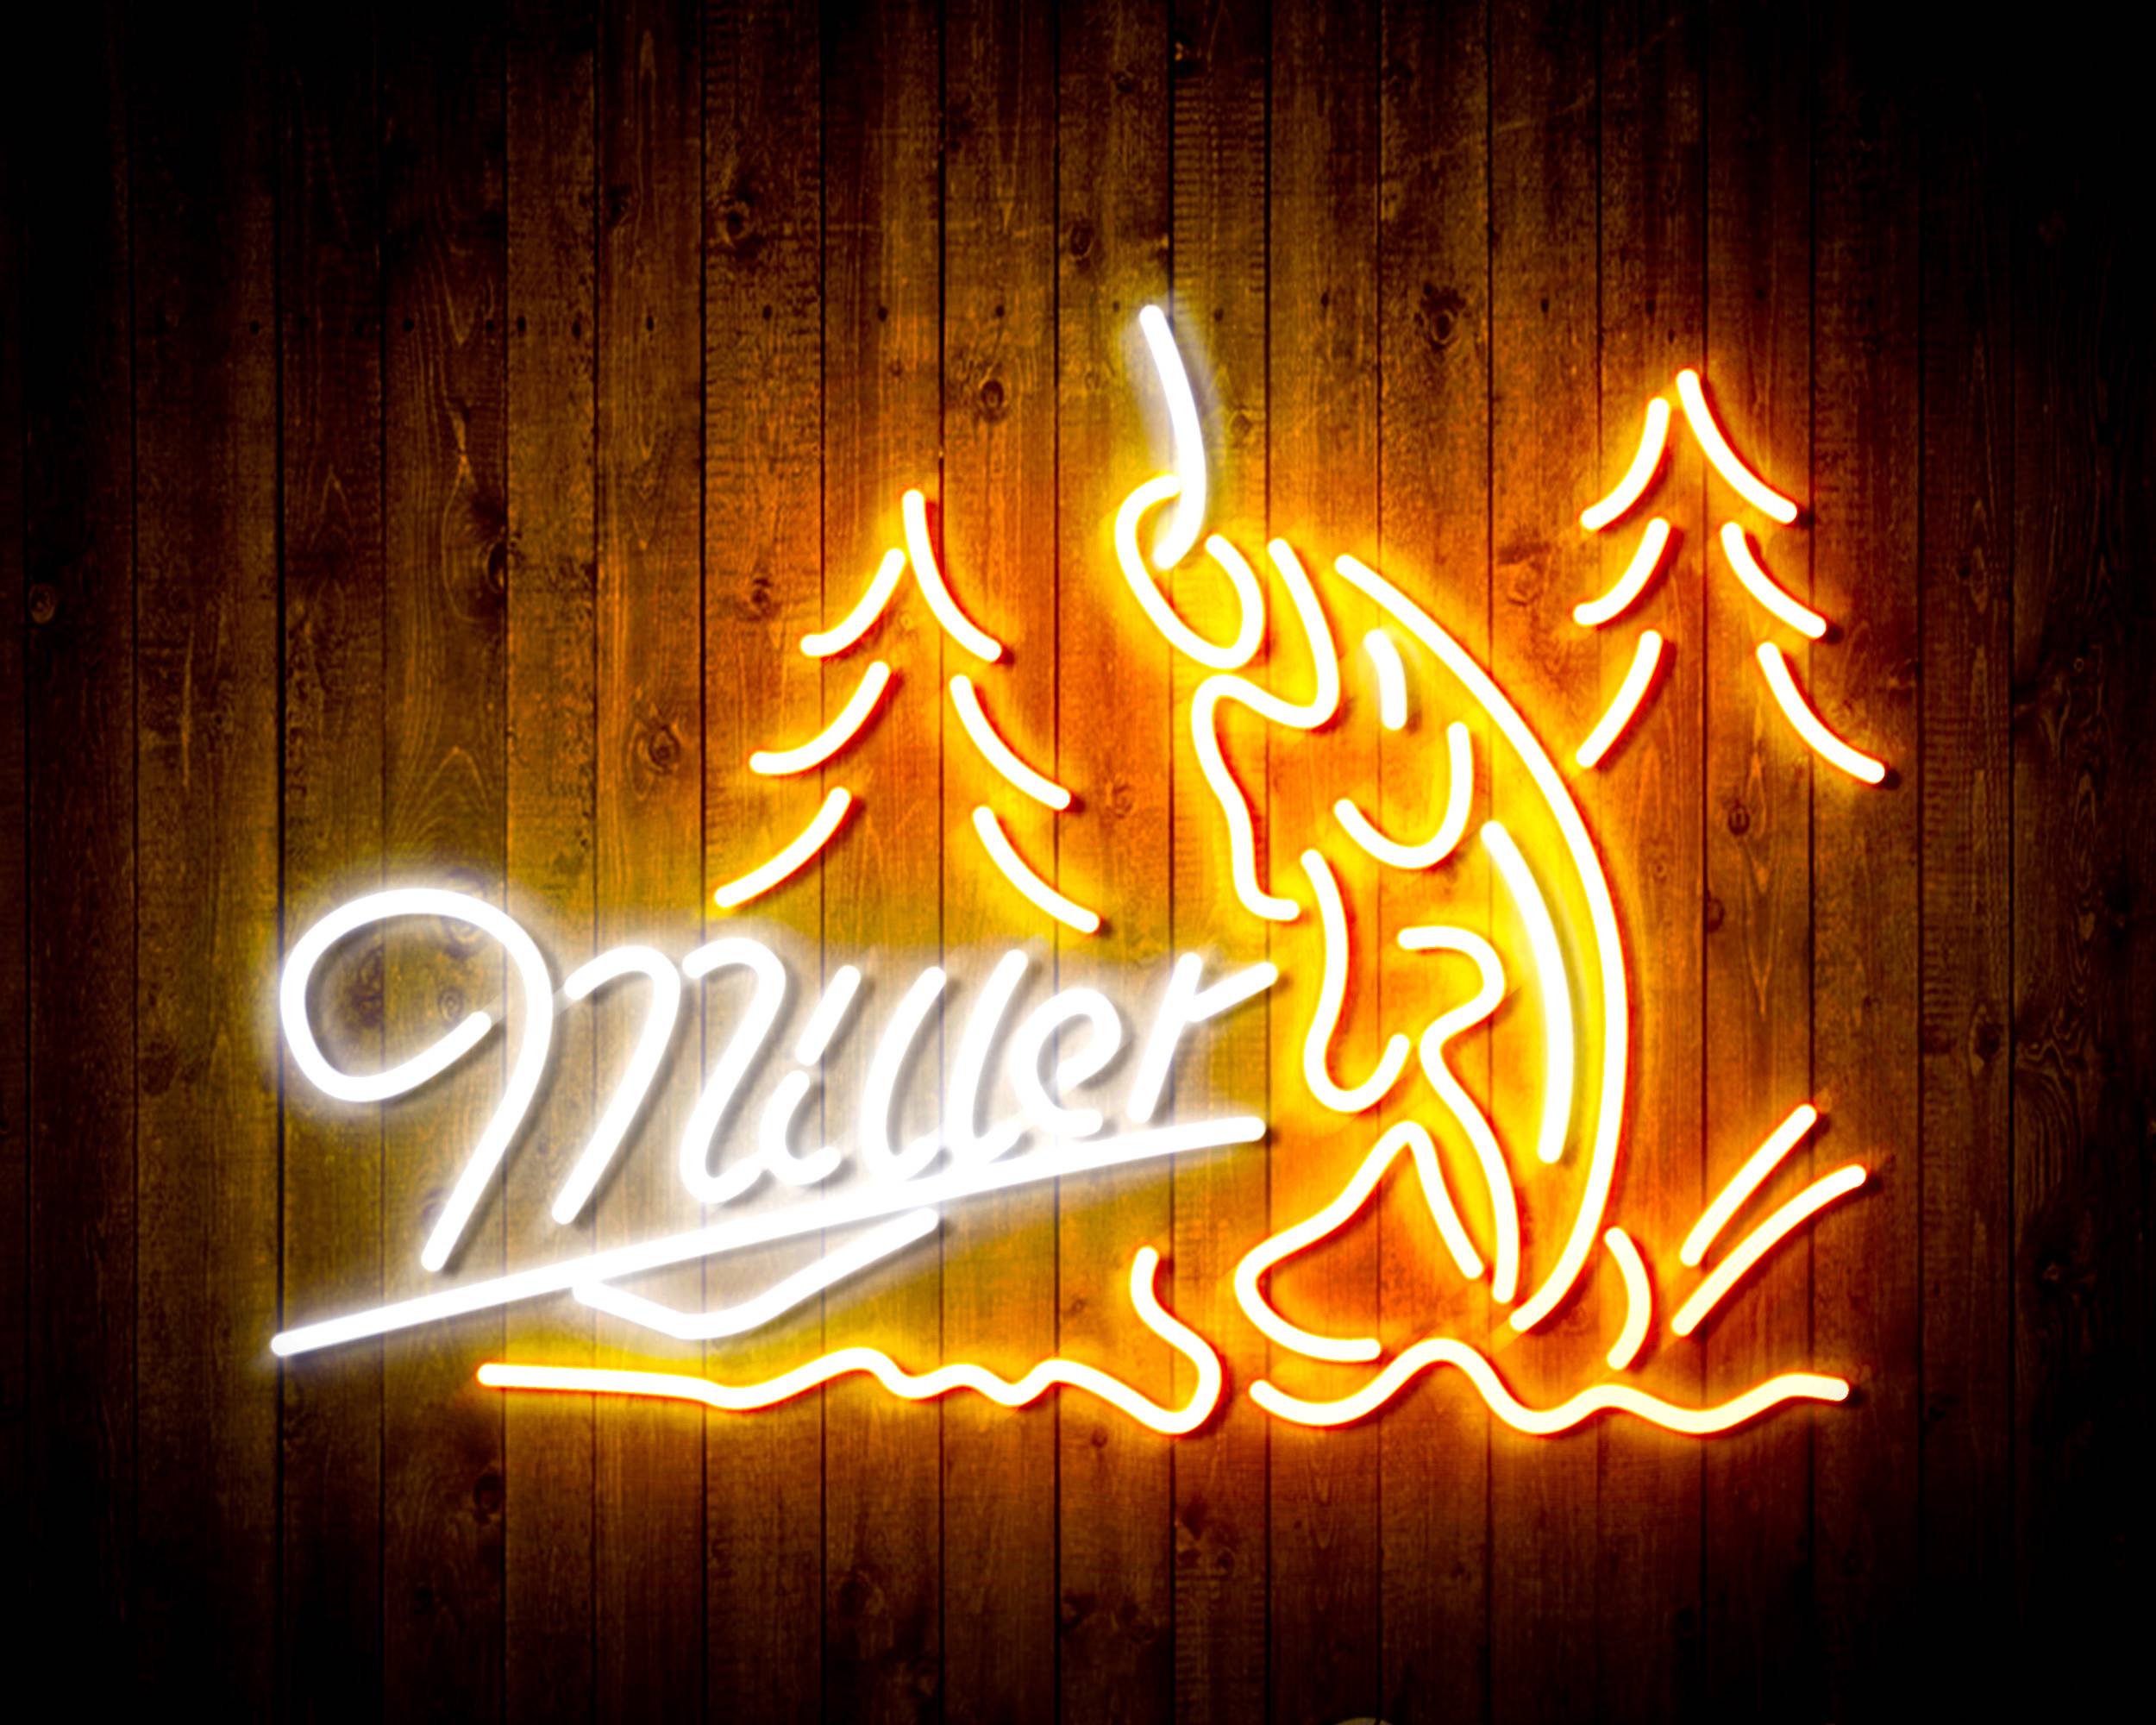 Miller Fishing Handmade Neon Flex LED Sign